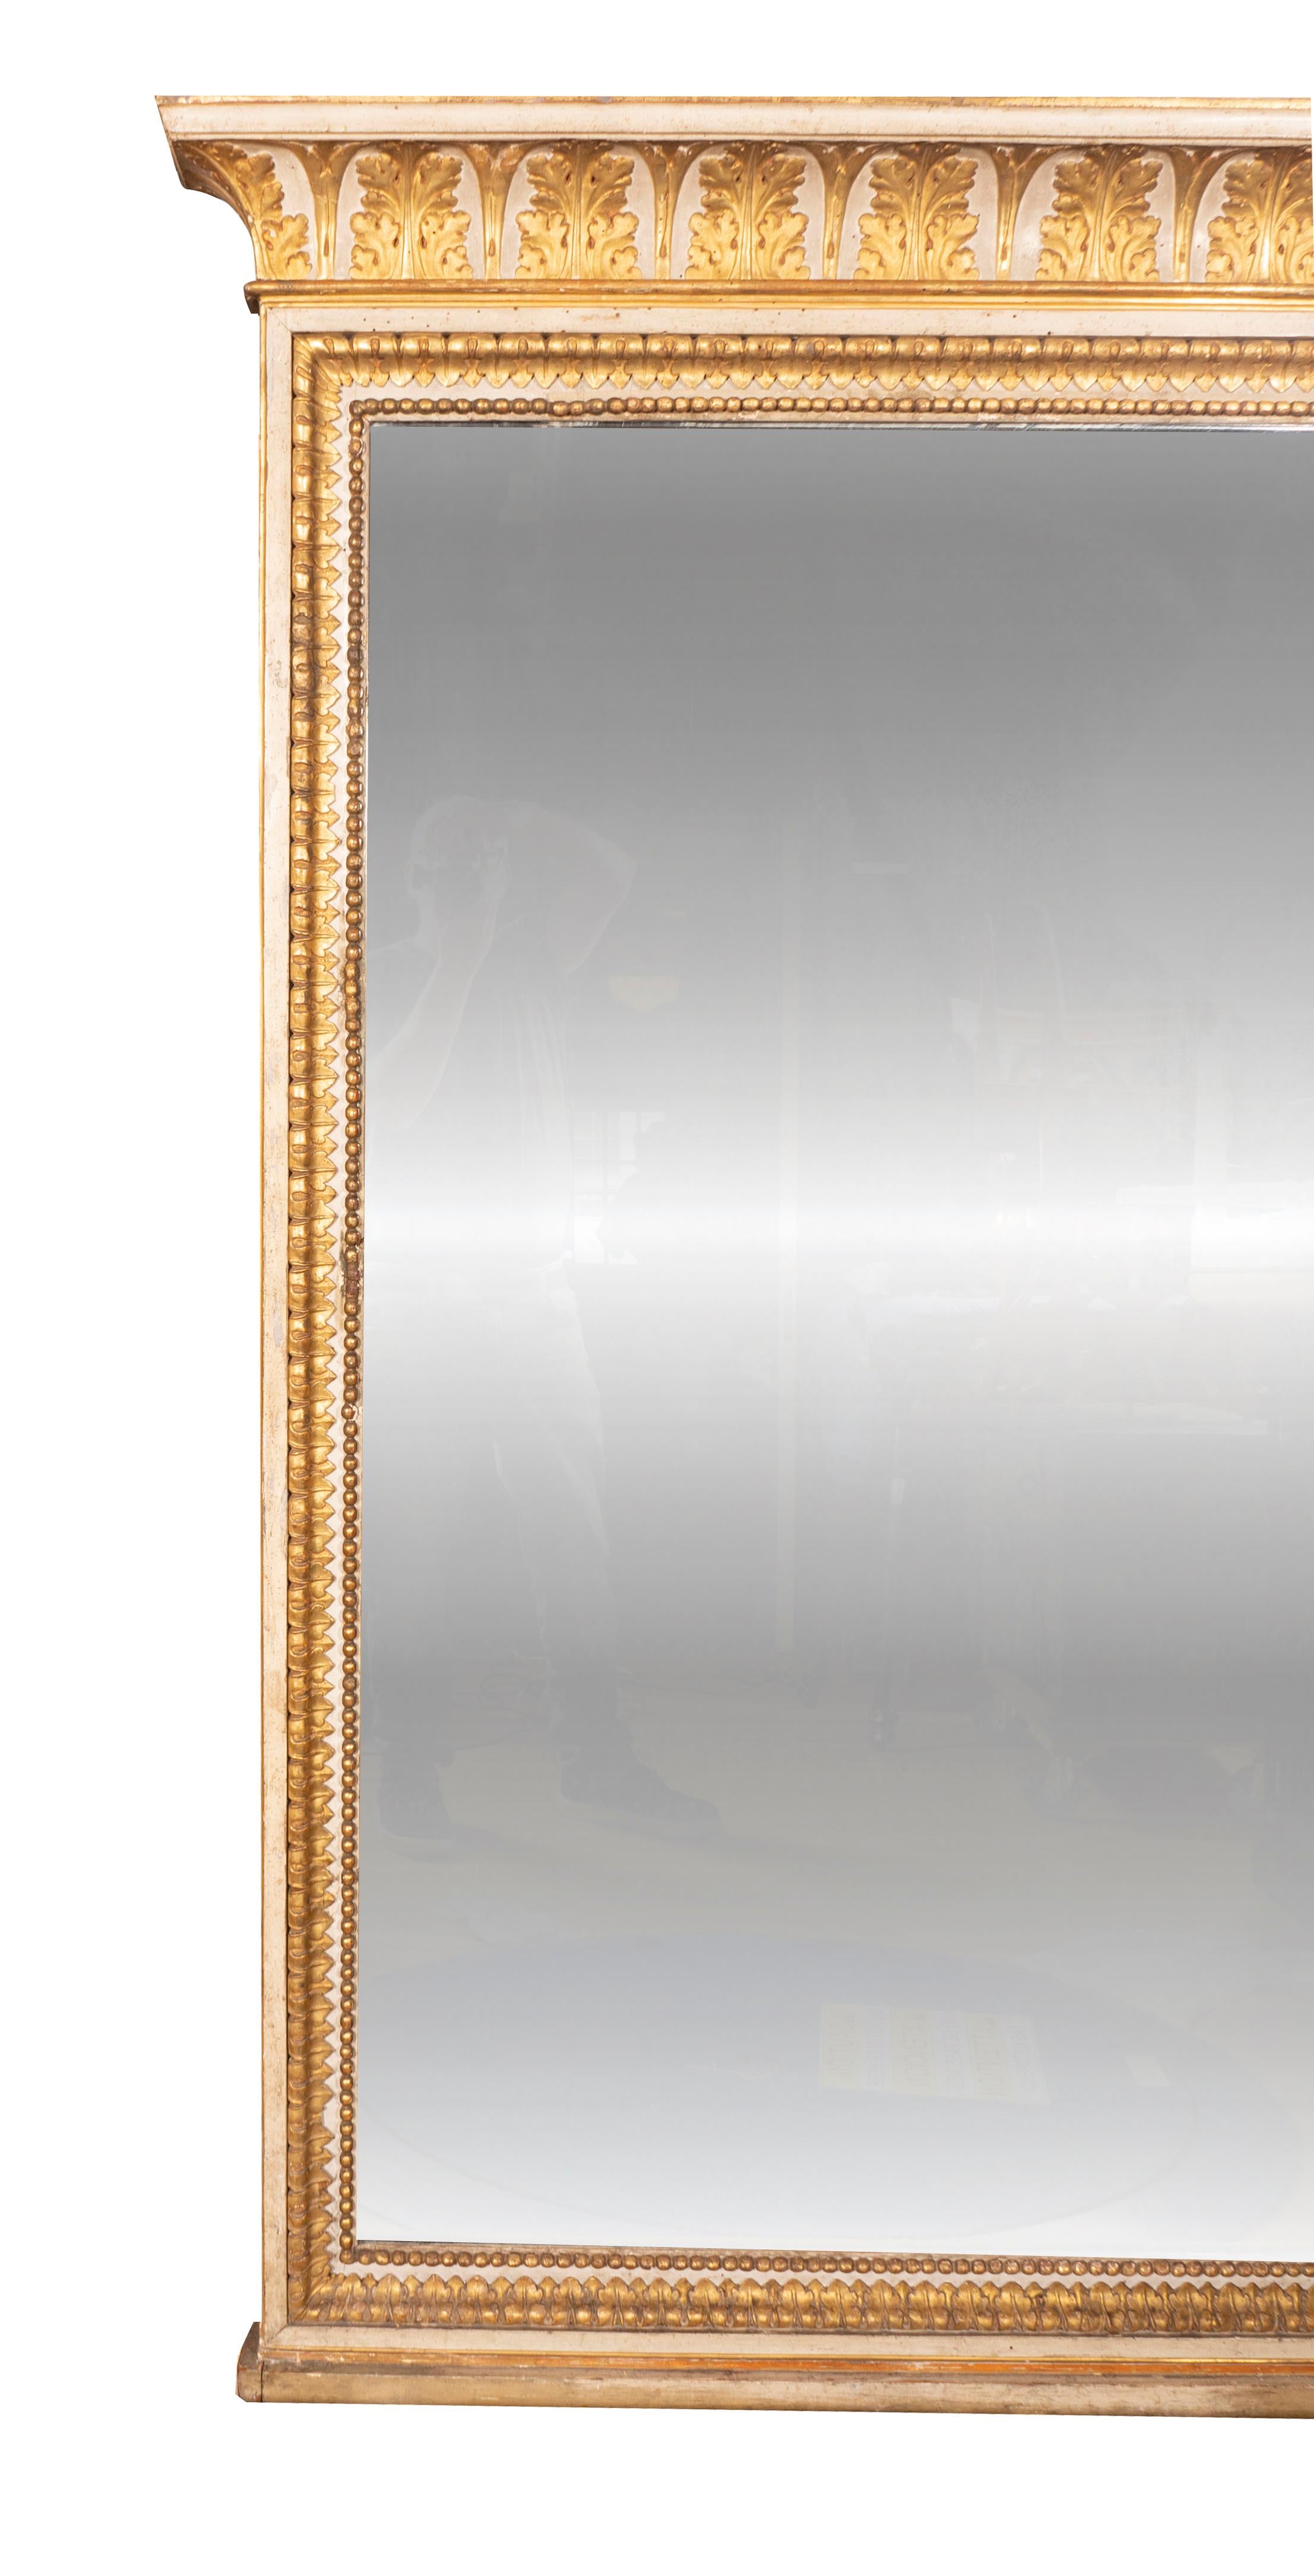 La corniche en forme avec des feuilles d'acanthe dorées dans des arcs au-dessus d'un miroir rectangulaire placé dans un cadre sculpté de pointes de feuilles et de perles. Installation préalable de Bunny Williams en Floride.